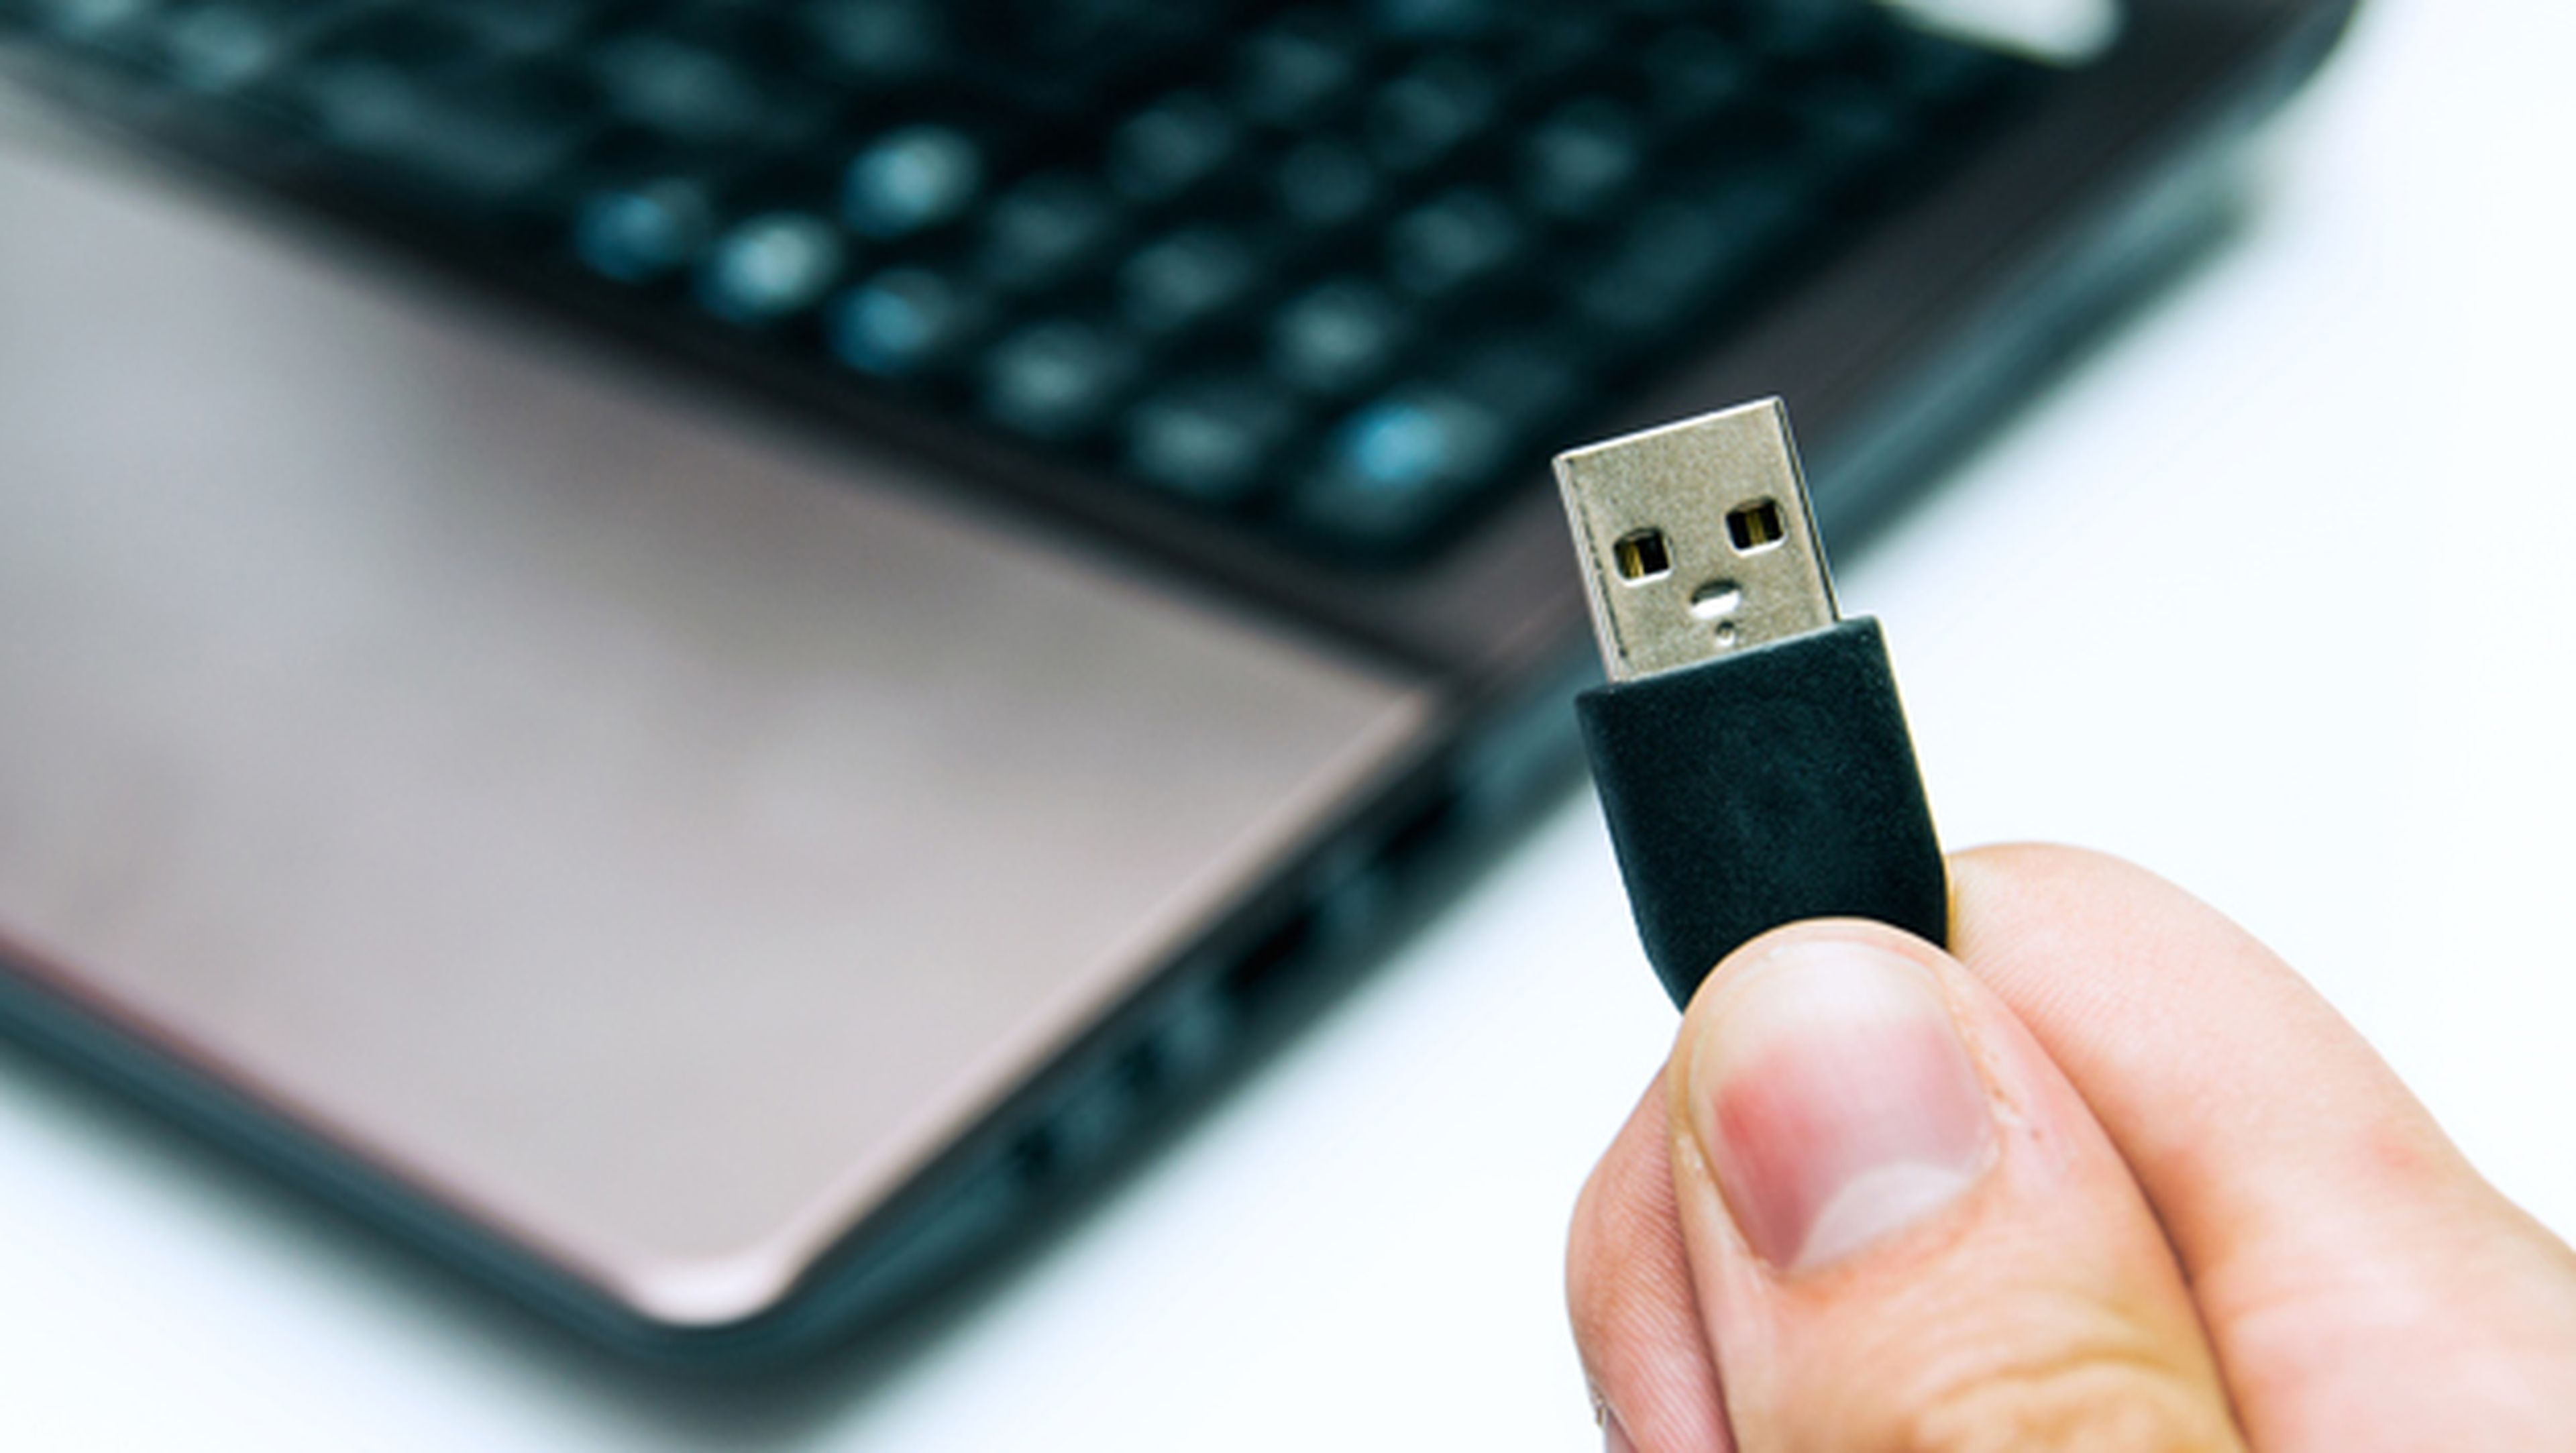 "Dispositivo USB no reconocido": Cómo solucionarlo